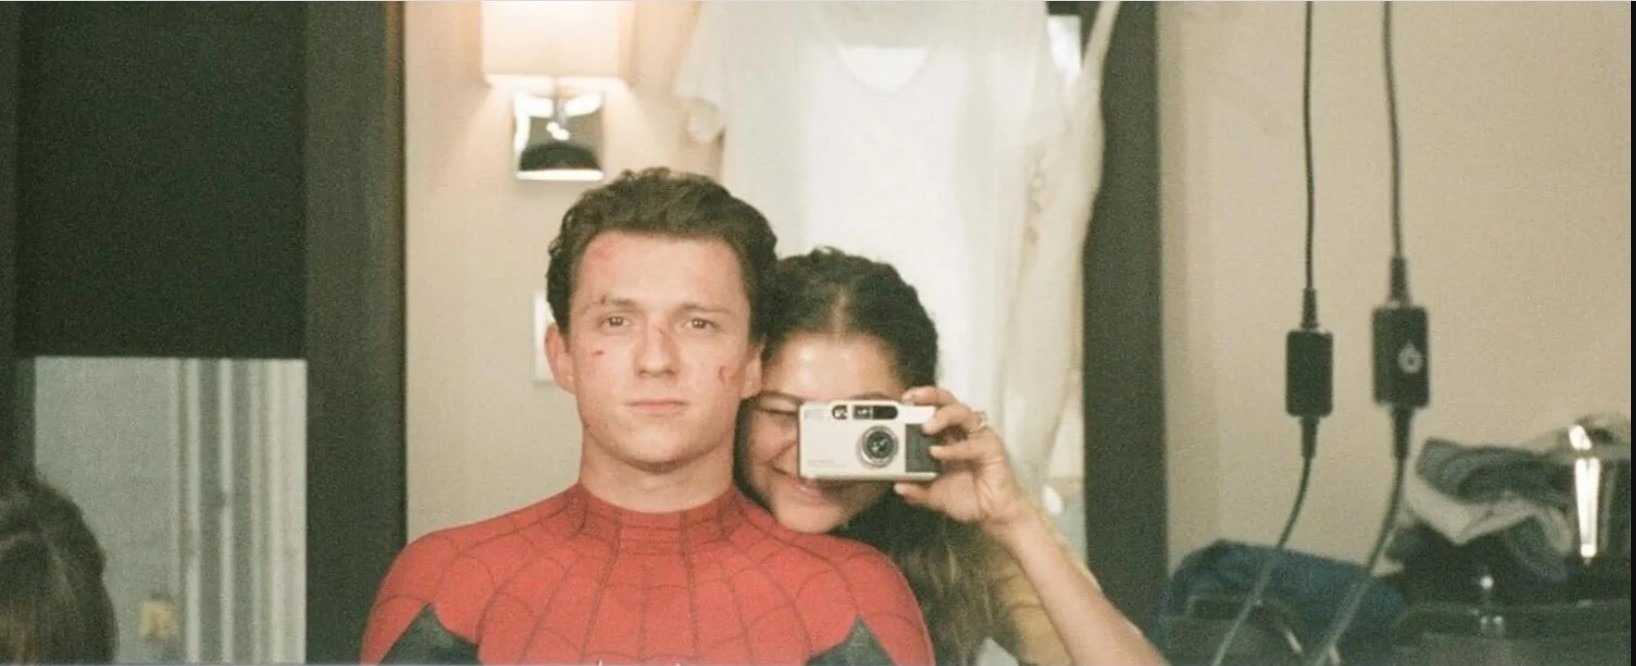 Los actores se conocieron en el 2017 durante el rodaje de Spiderman vuelve a casa/ Foto: Instagram